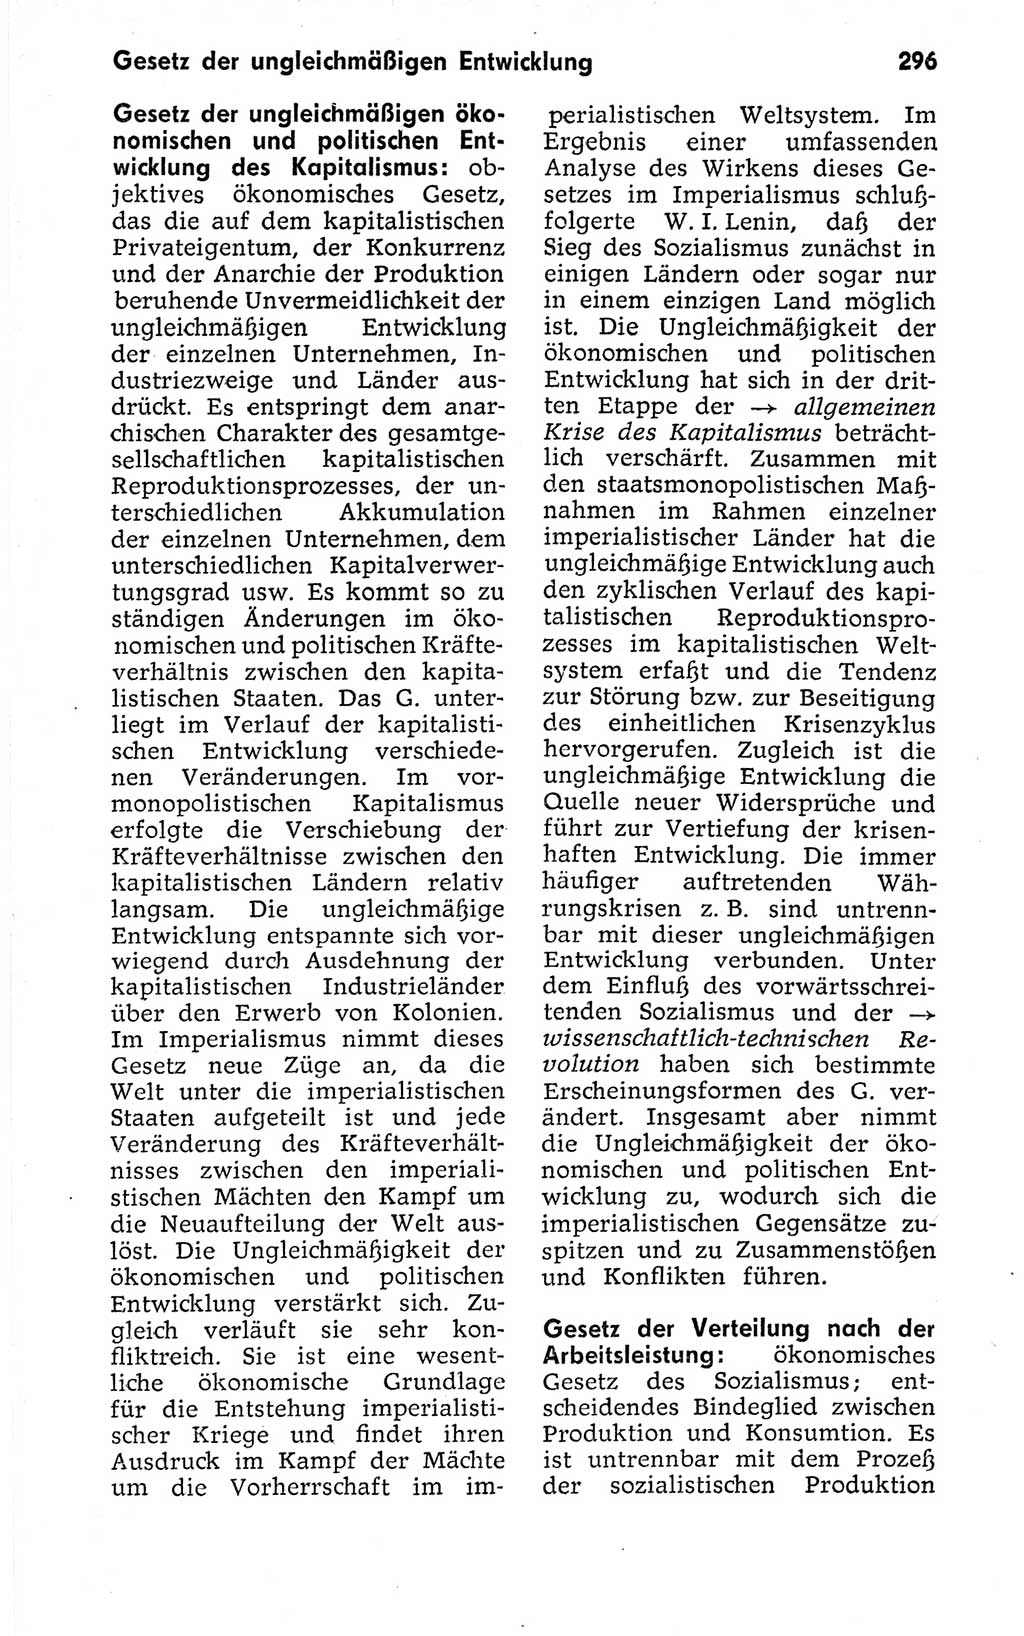 Kleines politisches Wörterbuch [Deutsche Demokratische Republik (DDR)] 1973, Seite 296 (Kl. pol. Wb. DDR 1973, S. 296)